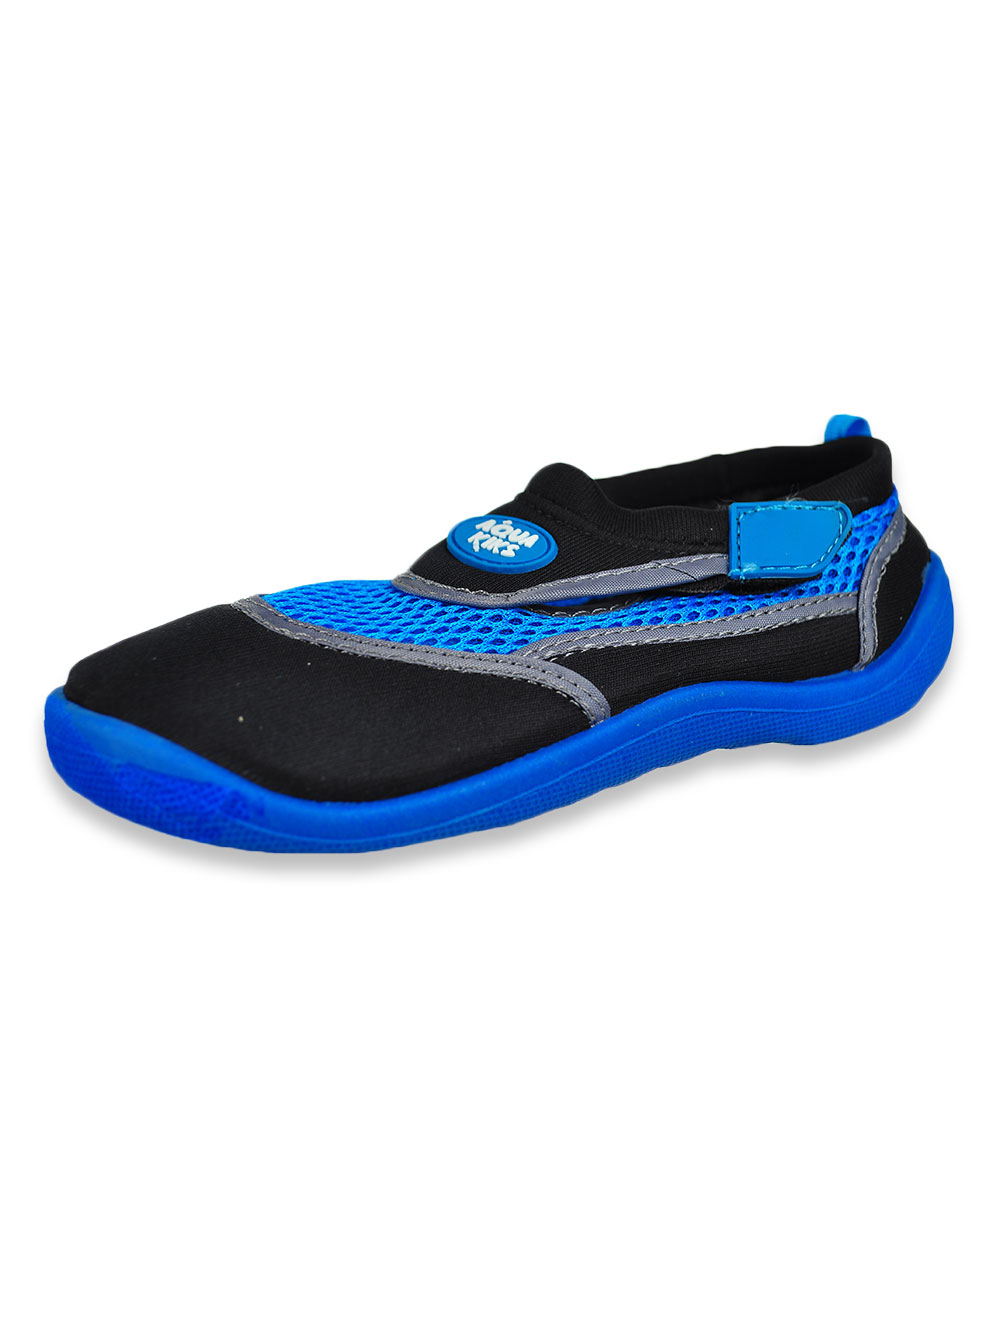 Aqua Kiks Boys' Water Shoes